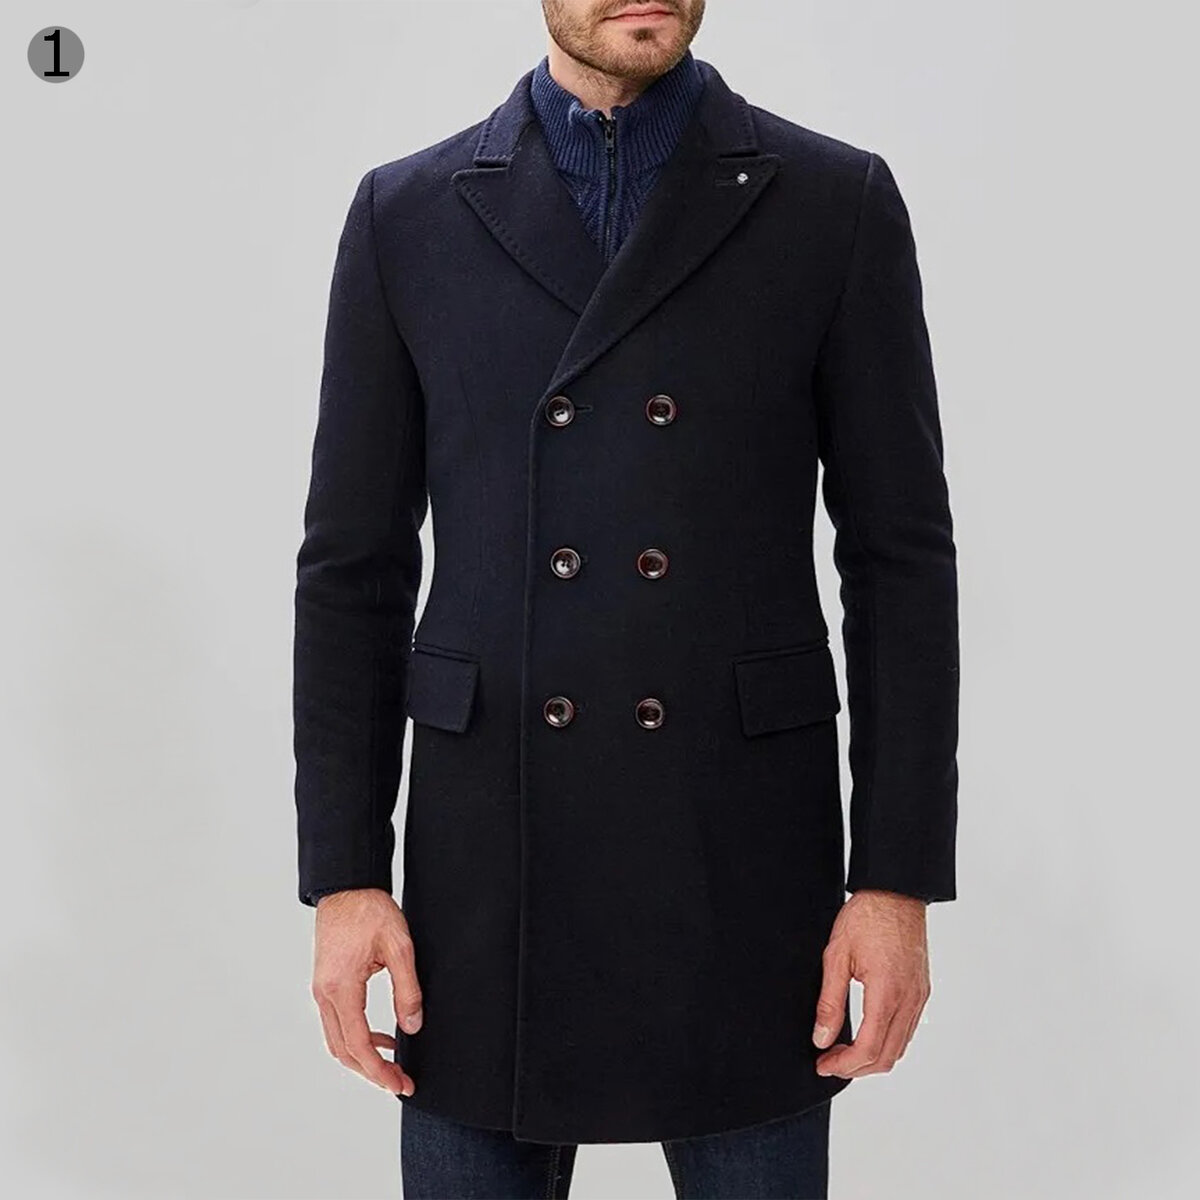 Лучшие мужские пальто. Беркайт мужское пальто. Berkytt пальто мужское. Пальто Berkytt мужское зимнее. Пальто мужское двубортное Mango man.